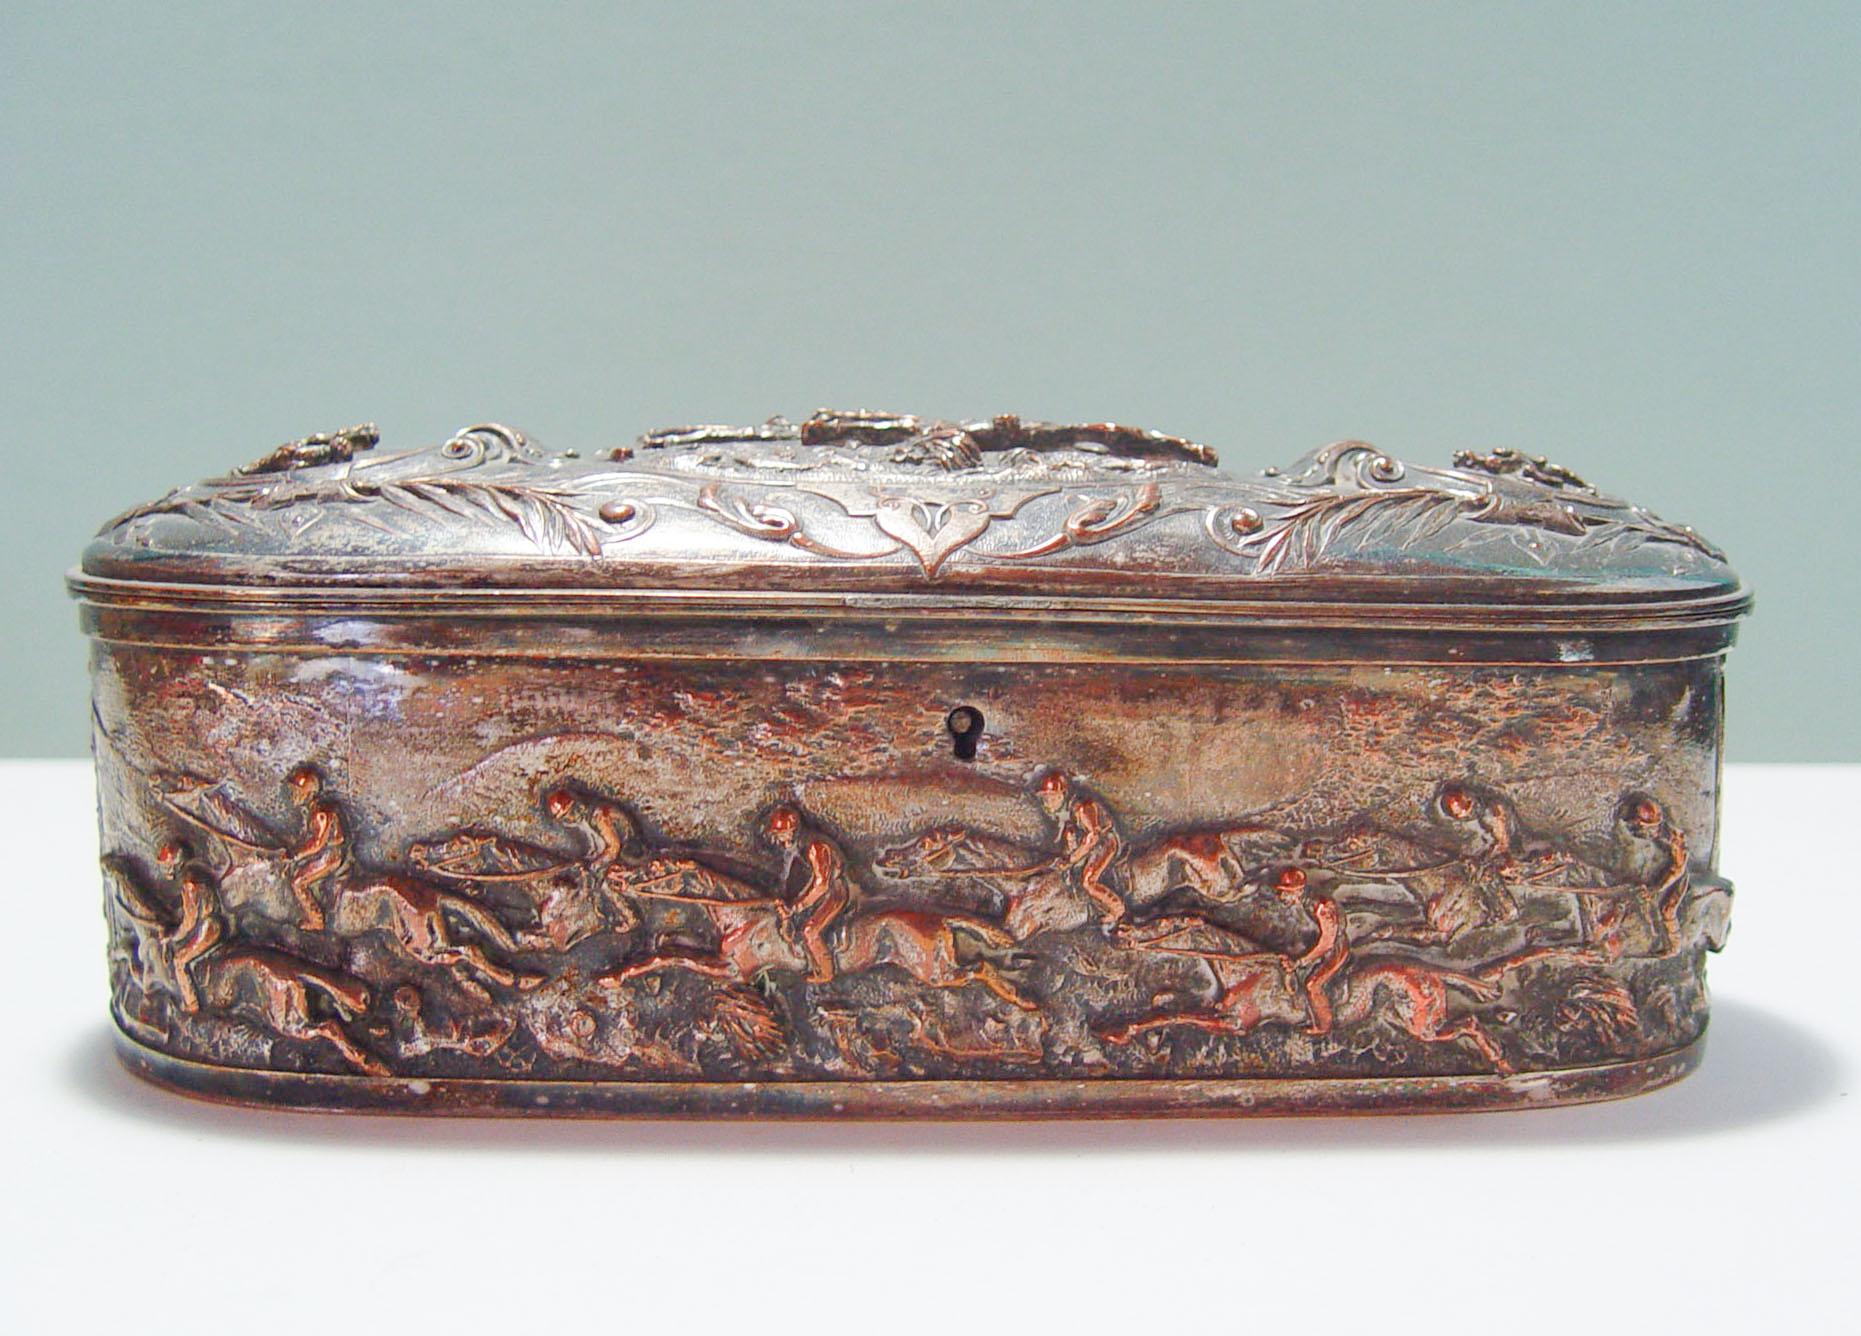 Coffret à bijoux ancien en métal argenté sur cuivre, avec motif de course de chevaux en très haut relief sur tout le pourtour, vers 1890. L'intérieur est en soie violette touffetée, il y avait des pieds à une époque, ils ont été enlevés depuis.